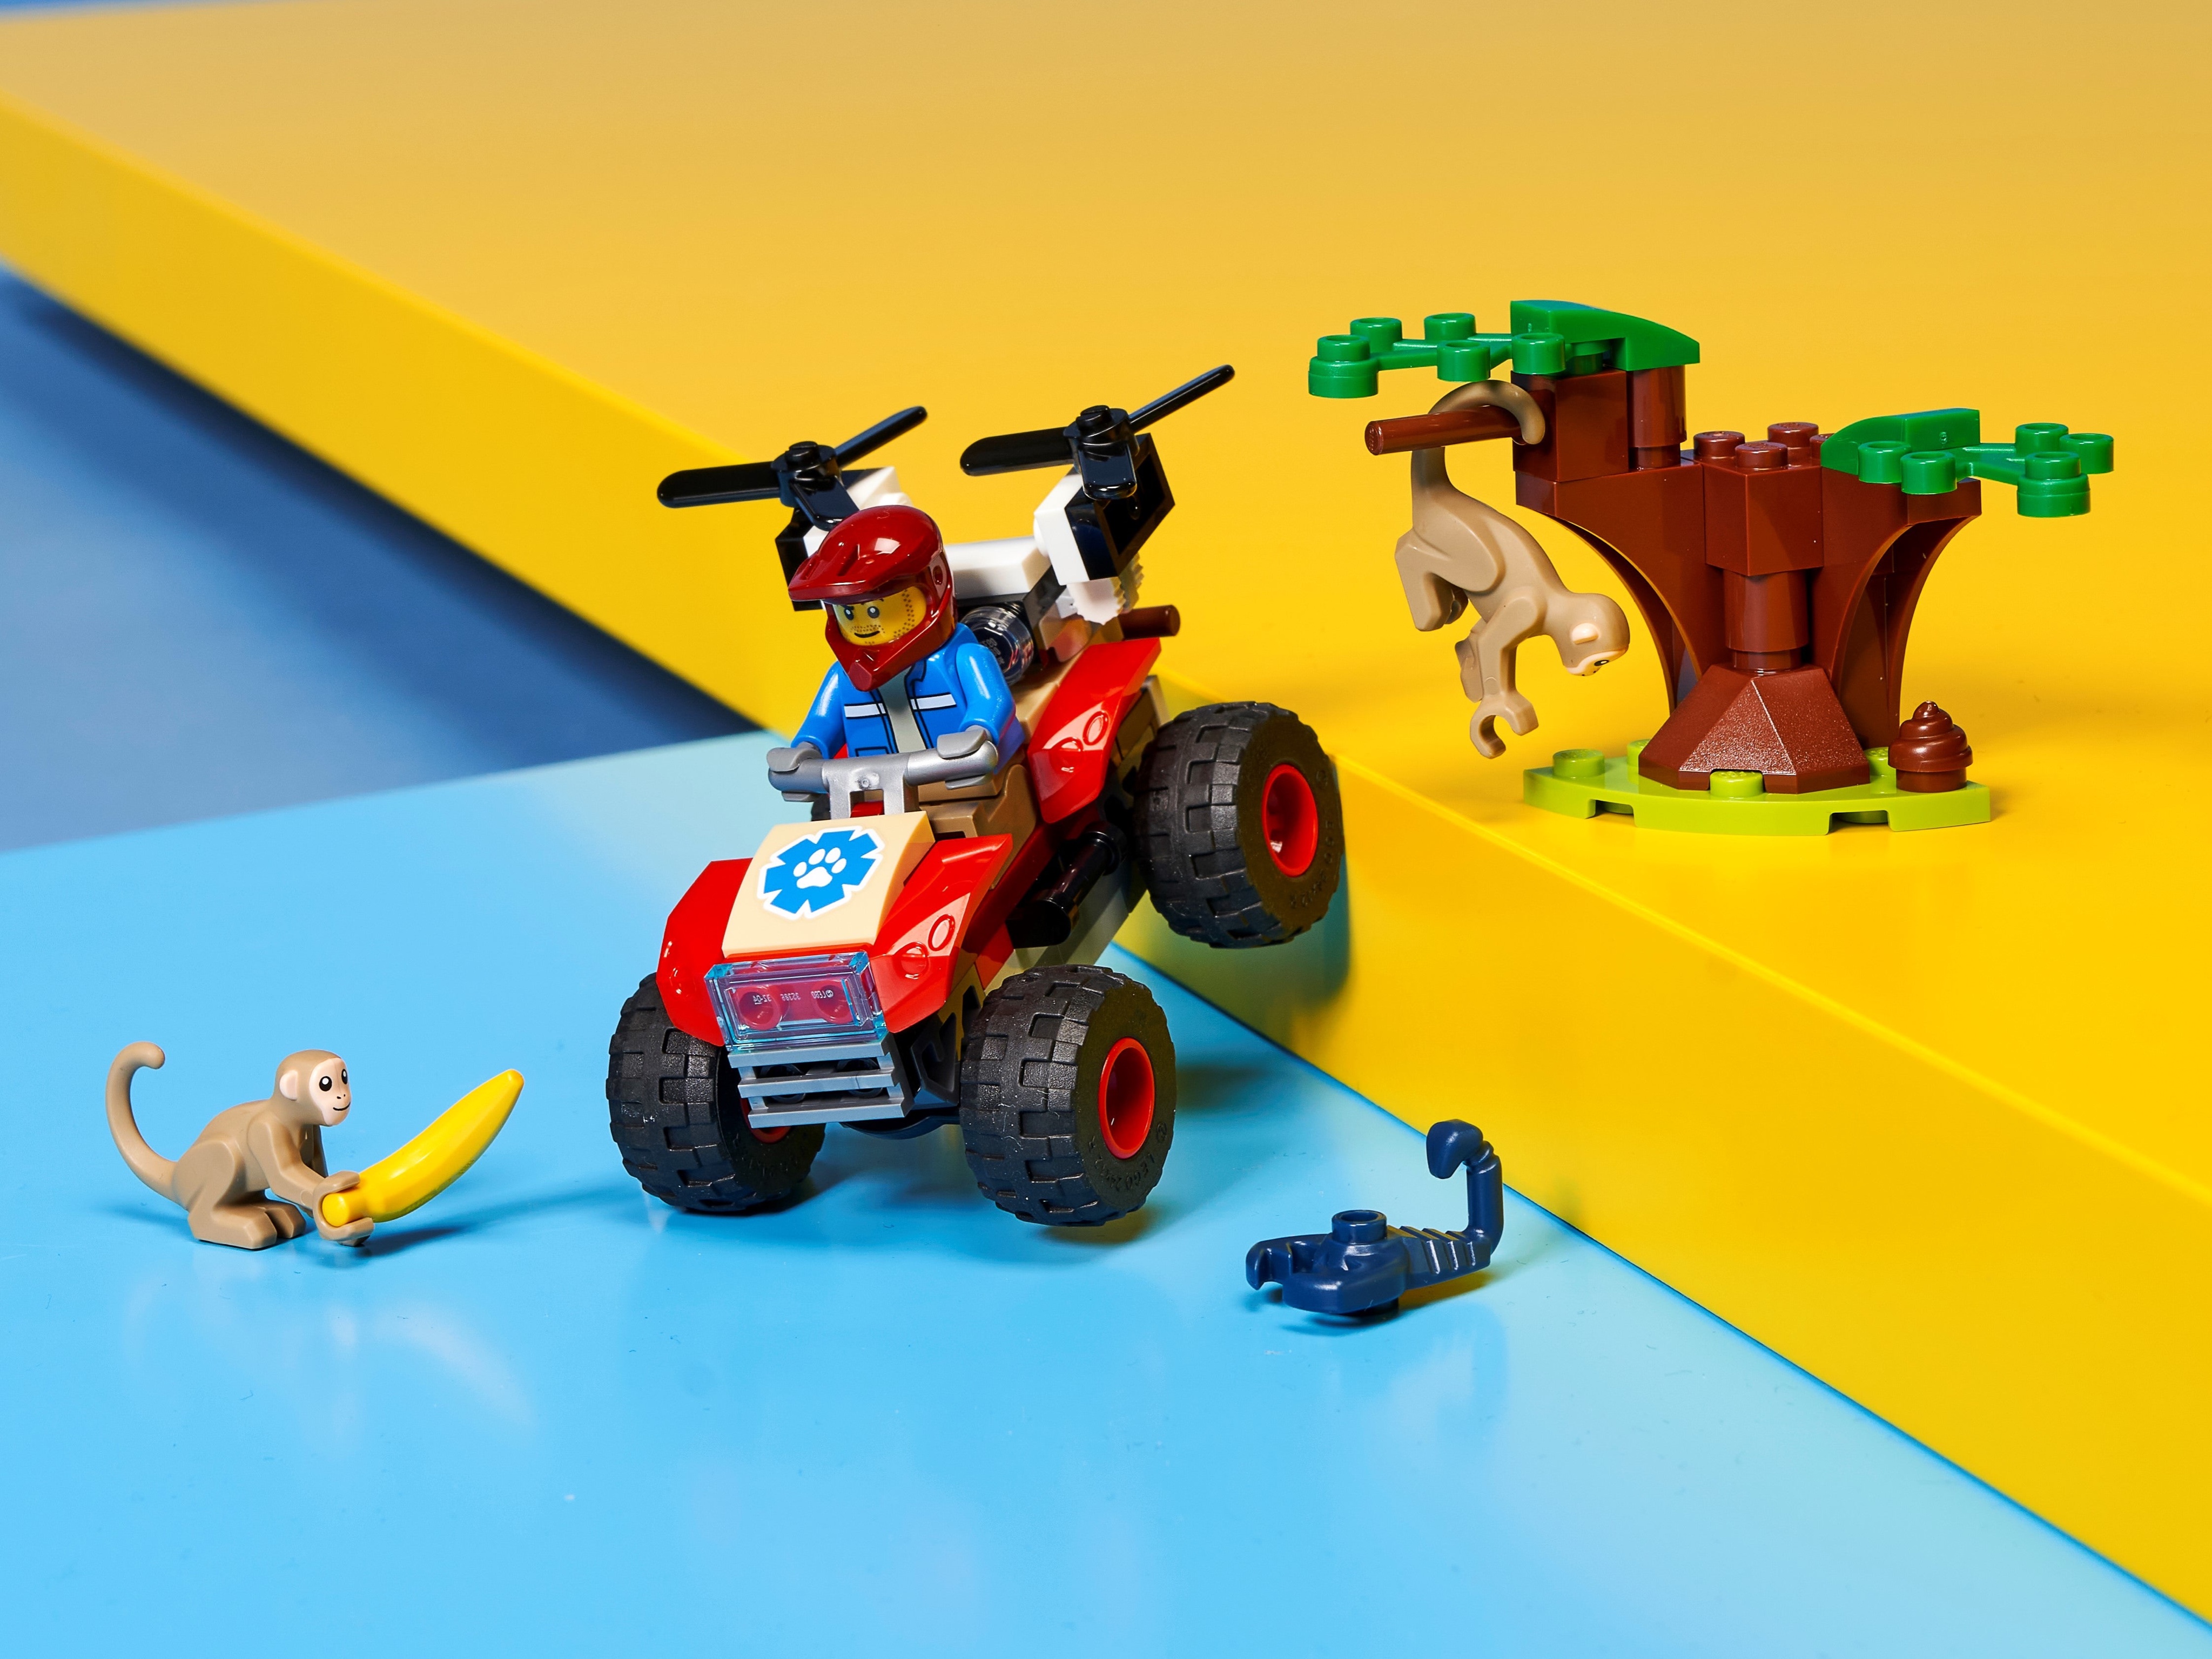 Конструктор LEGO City Wildlife «Спасательный вездеход для зверей» 60300 / 74 детали